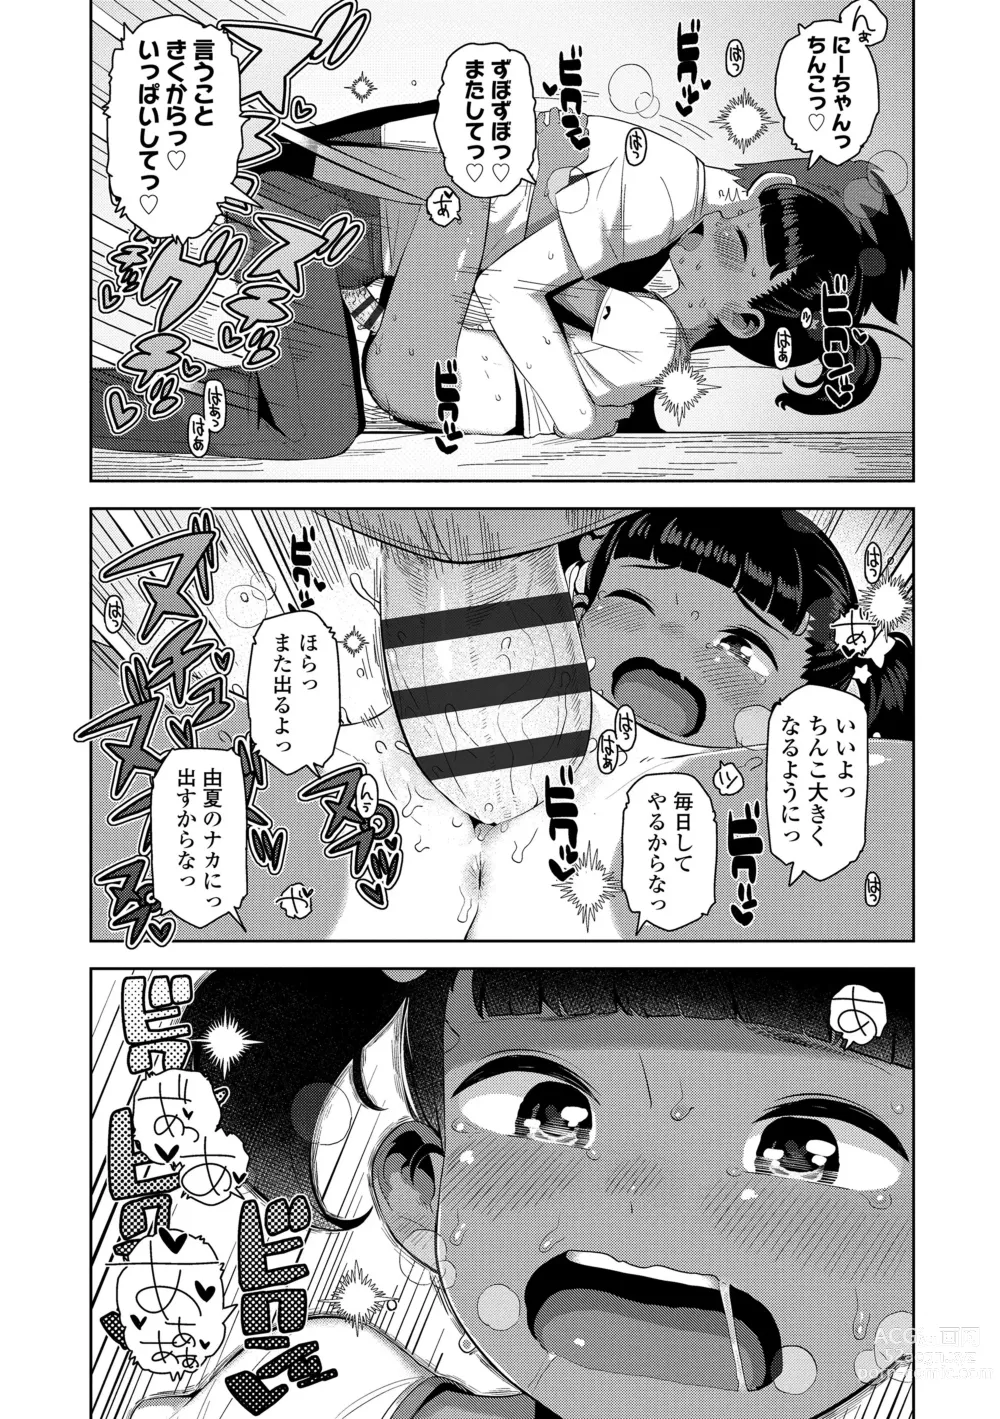 Page 188 of manga Chitchakute ohisama no nioi